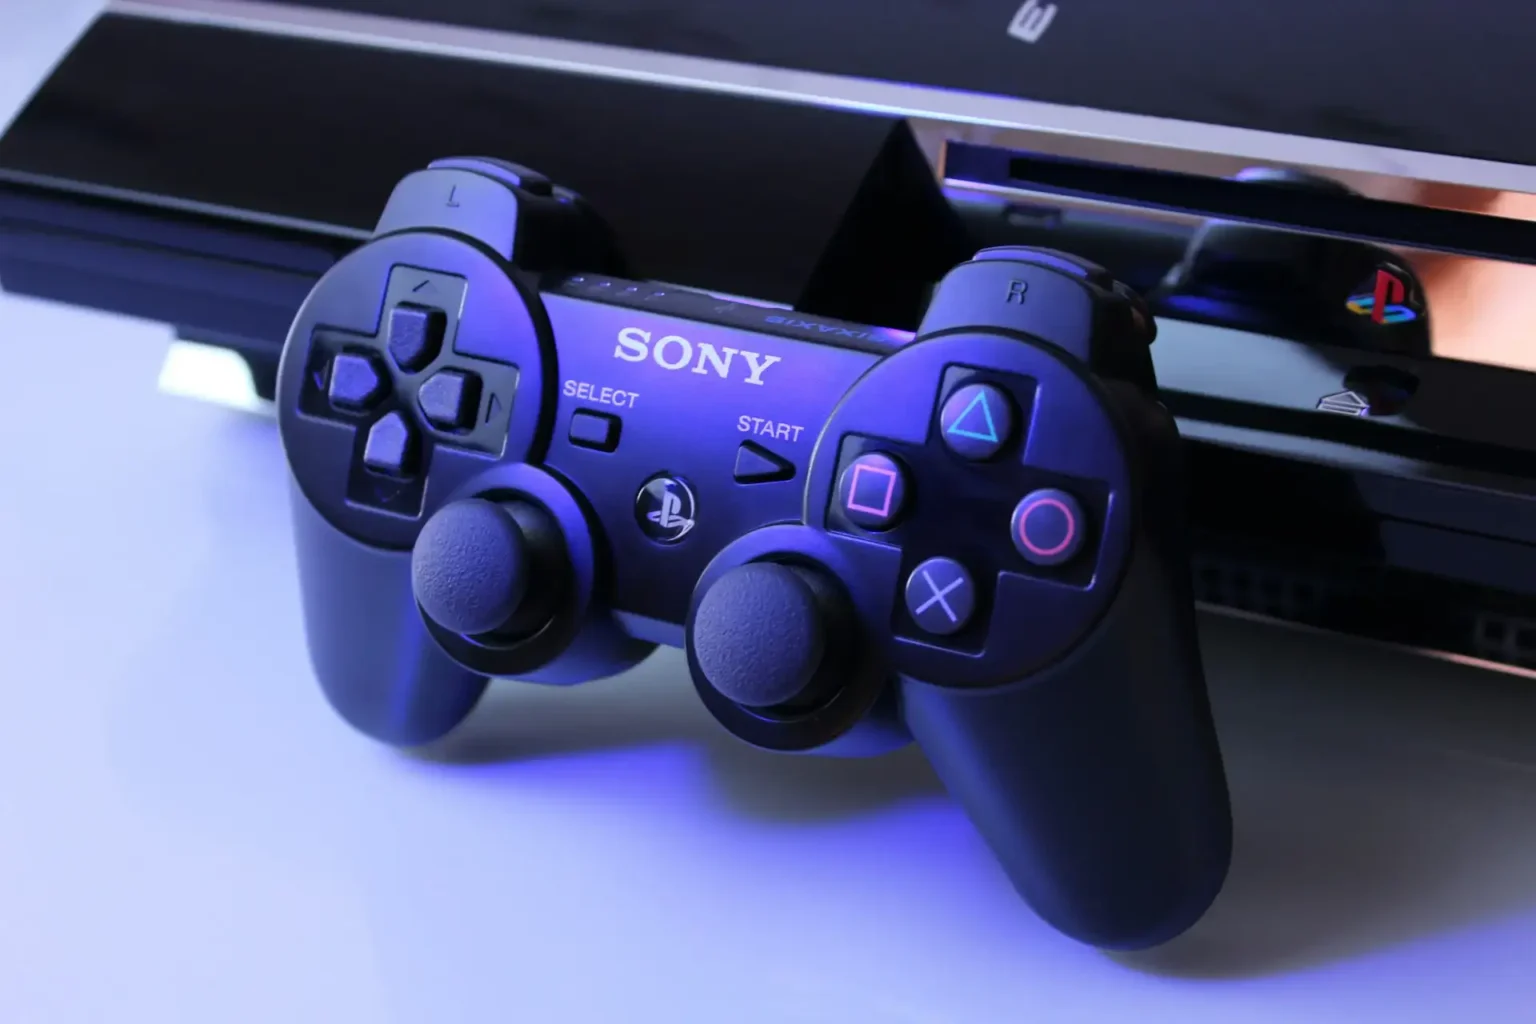 Sony playstation layoffs सोनी अपने सोनी प्लेस्टेशन में 900 कर्मचारियों को नौकरी से निकालेगी